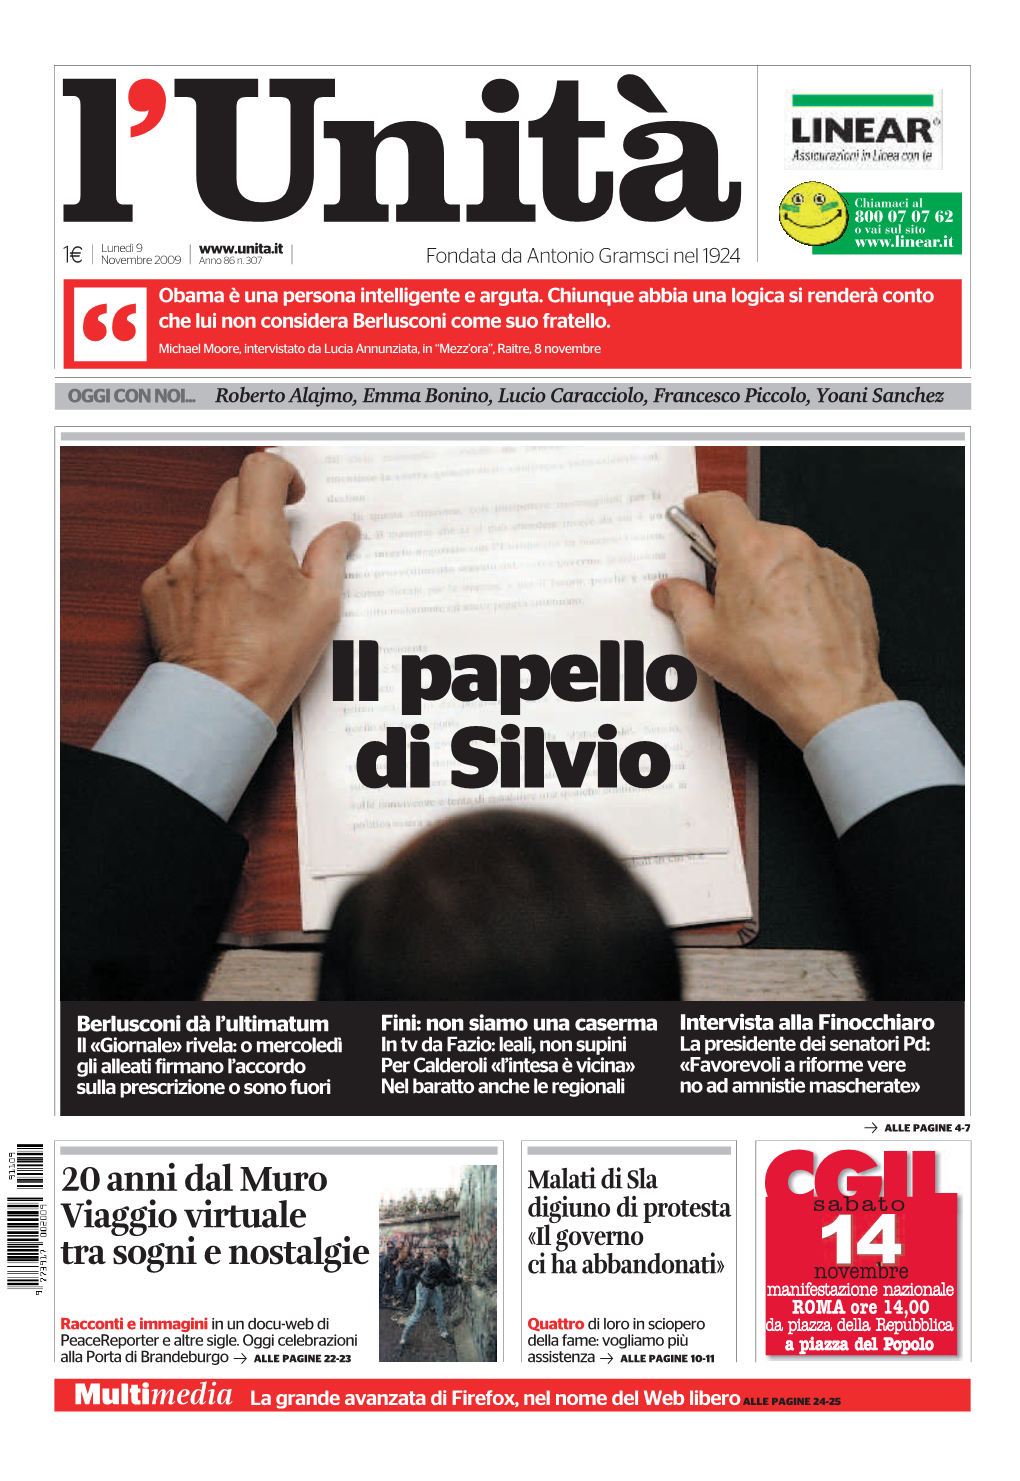 Il Papello Di Silvio